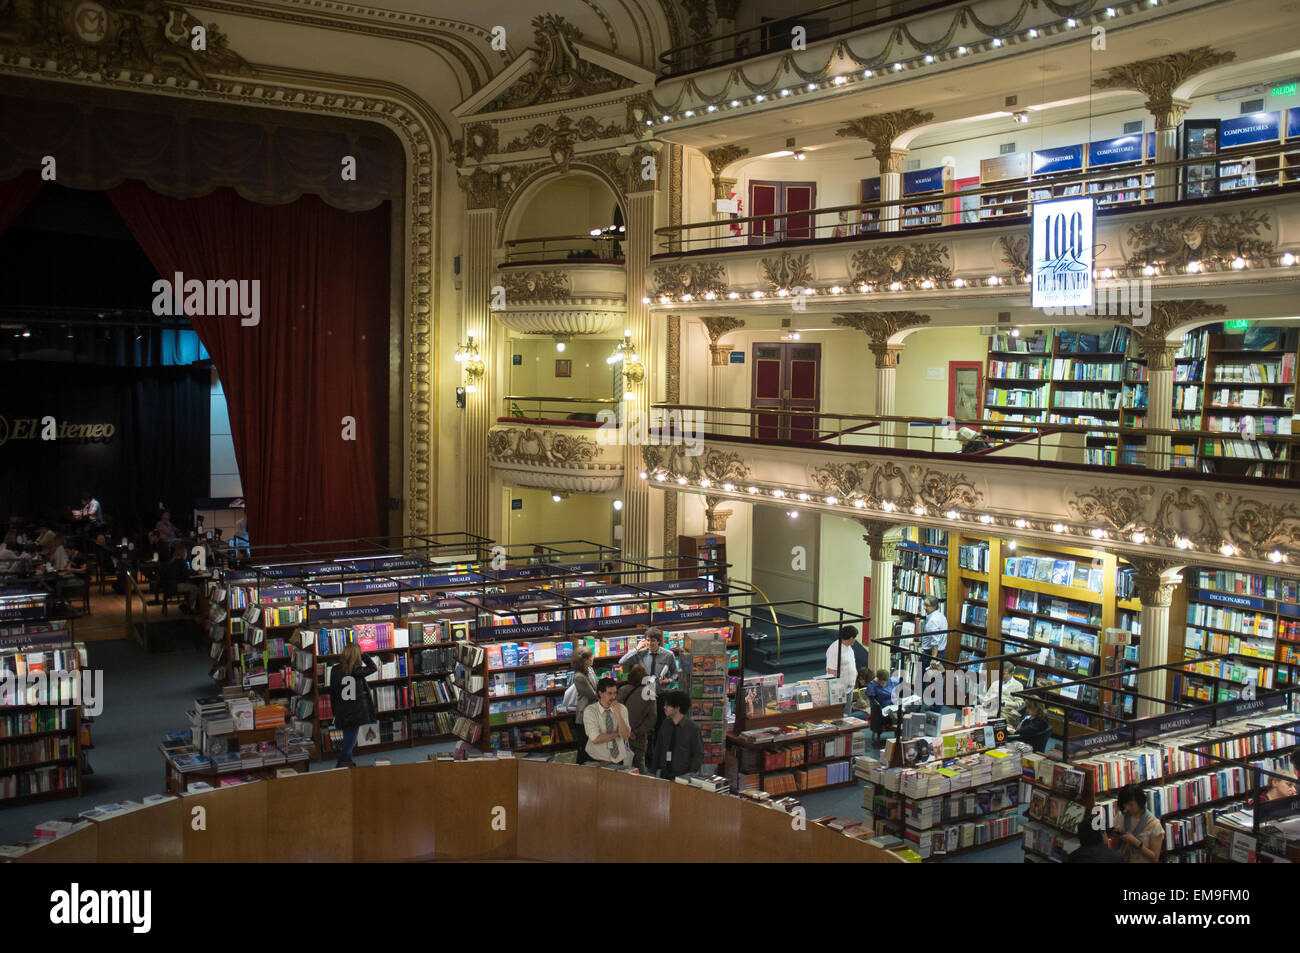 Bibliothek "El Ateneo" von der Stadt Buenos Aires Argentinien, ist eine besonders interessante touristische Attraktion wird ein Drama adapte Stockfoto